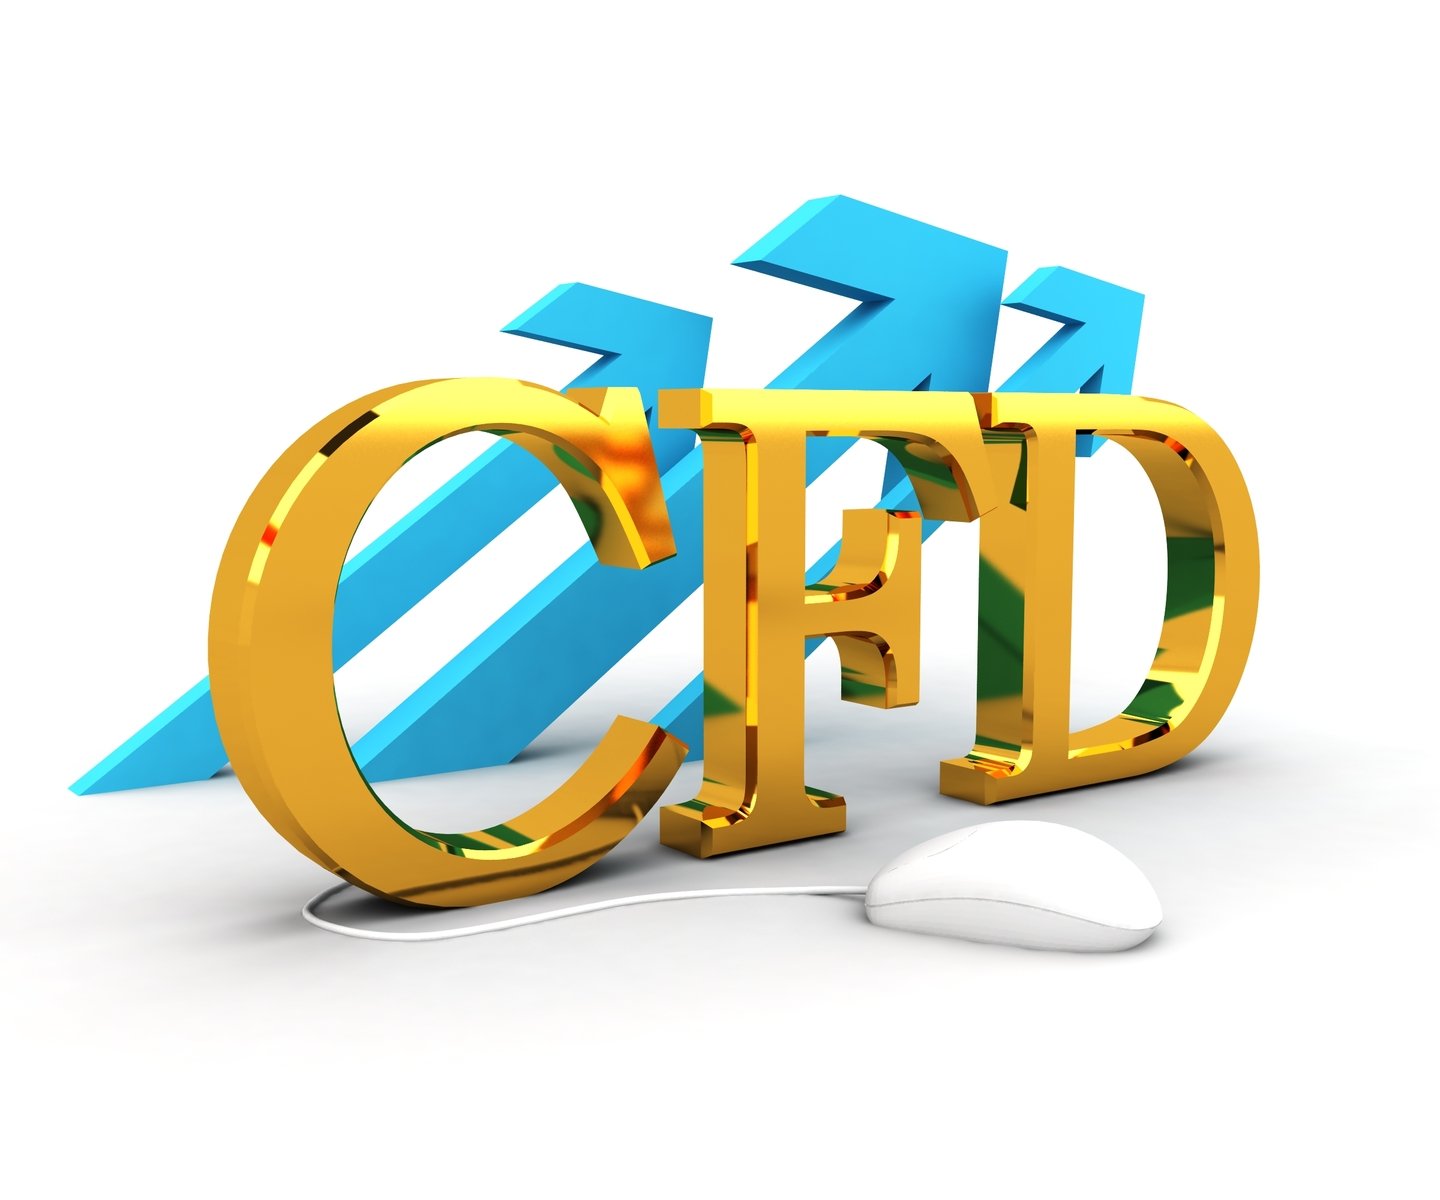 Các lý do khiến nhiều người nghĩ CFD là hoạt động giao dịch lừa đảo